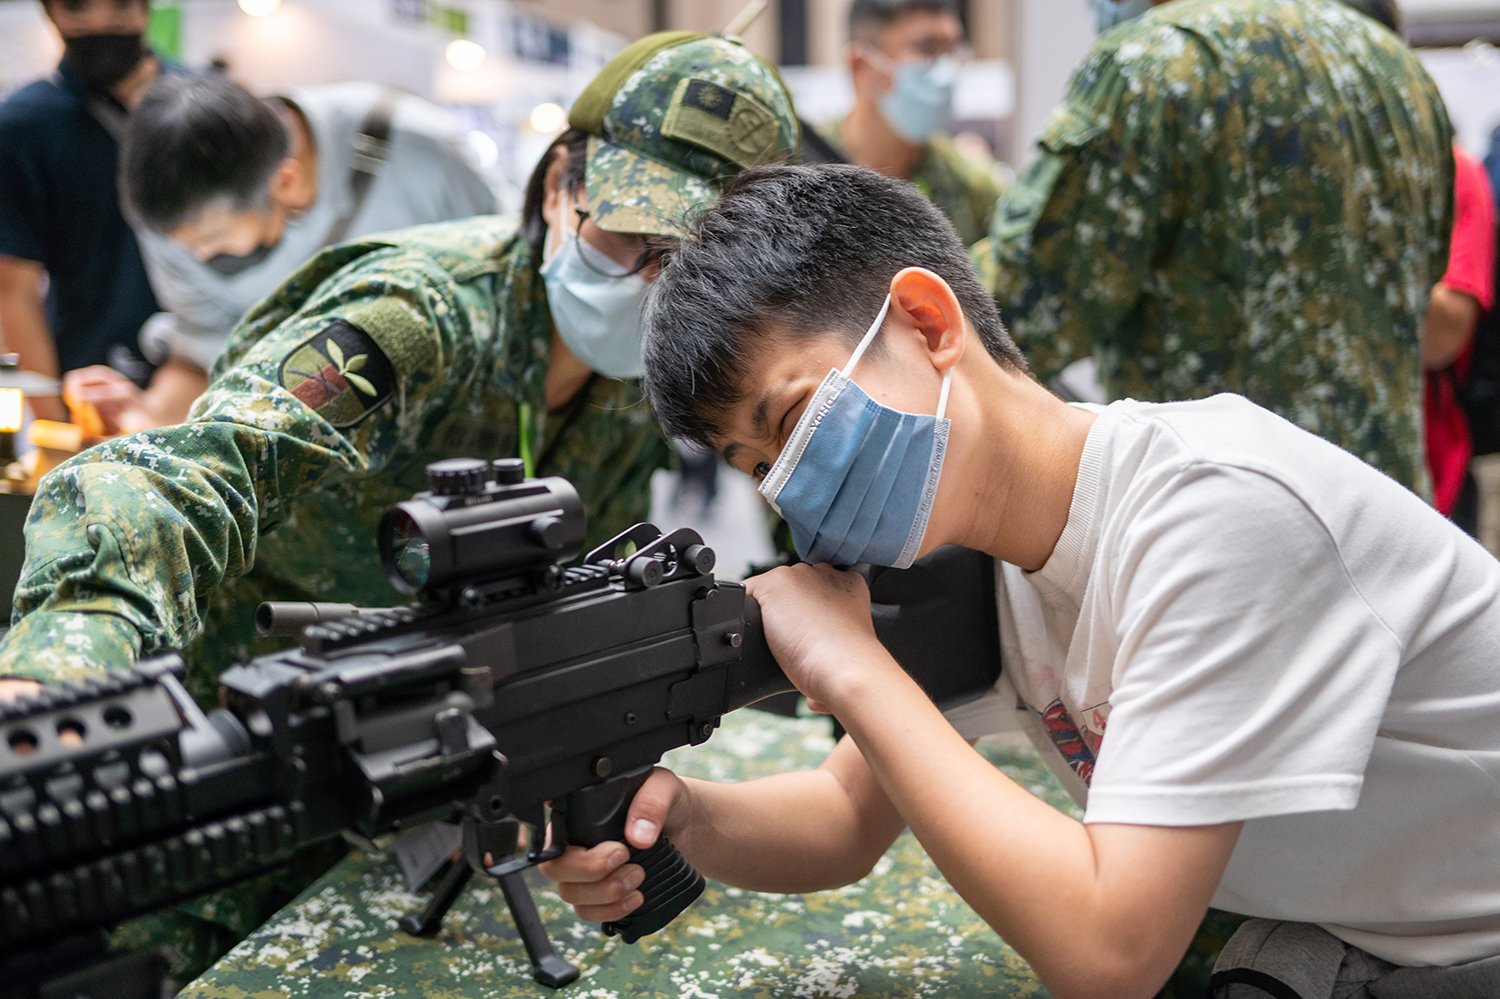 Un miembro de las fuerzas armadas muestra una ametralladora ligera descargada a un niño de primaria en una campaña de reclutamiento de la Academia Militar en la feria de airsoft MOA en Taipei, Taiwán, el 4 de diciembre.